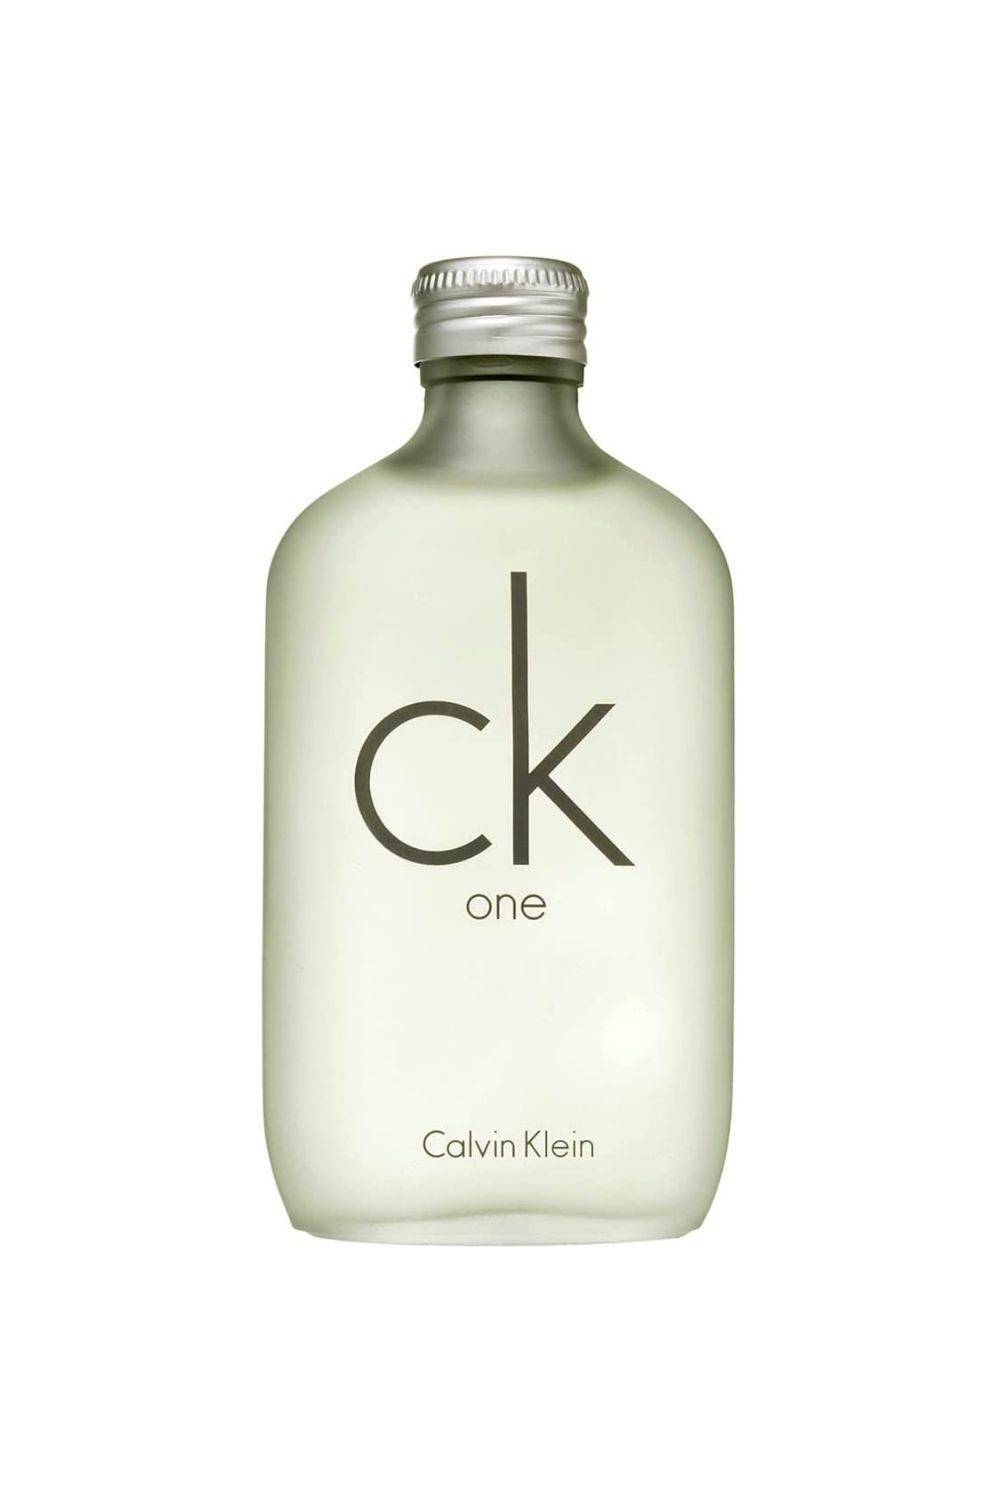 Perfumes frescos de mujer: CK One de Calvin Klein